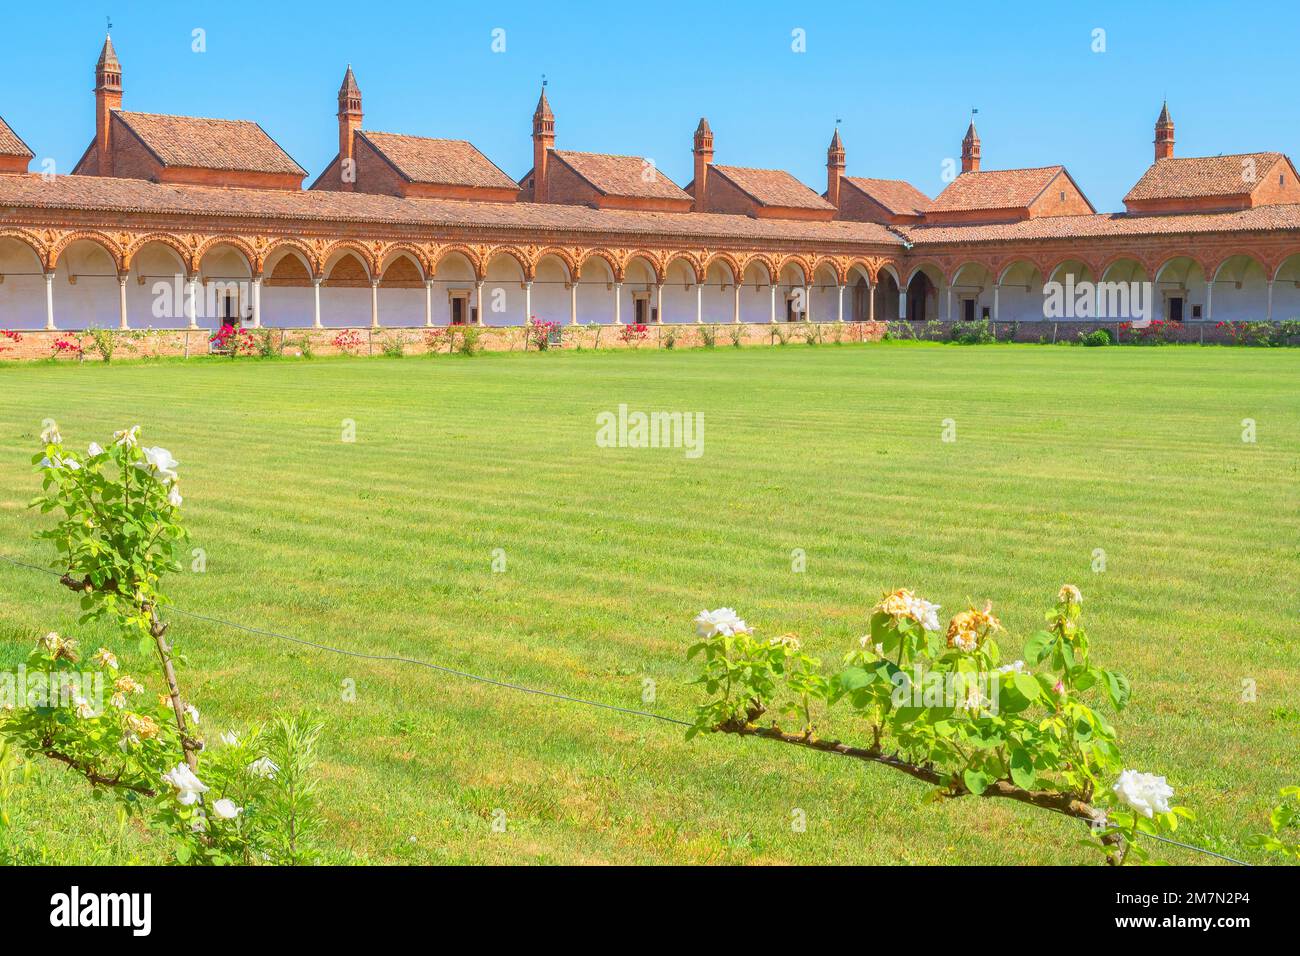 Giardino del monastero, monastero della Certosa di Pavia, Lombardia, Italia  Foto stock - Alamy